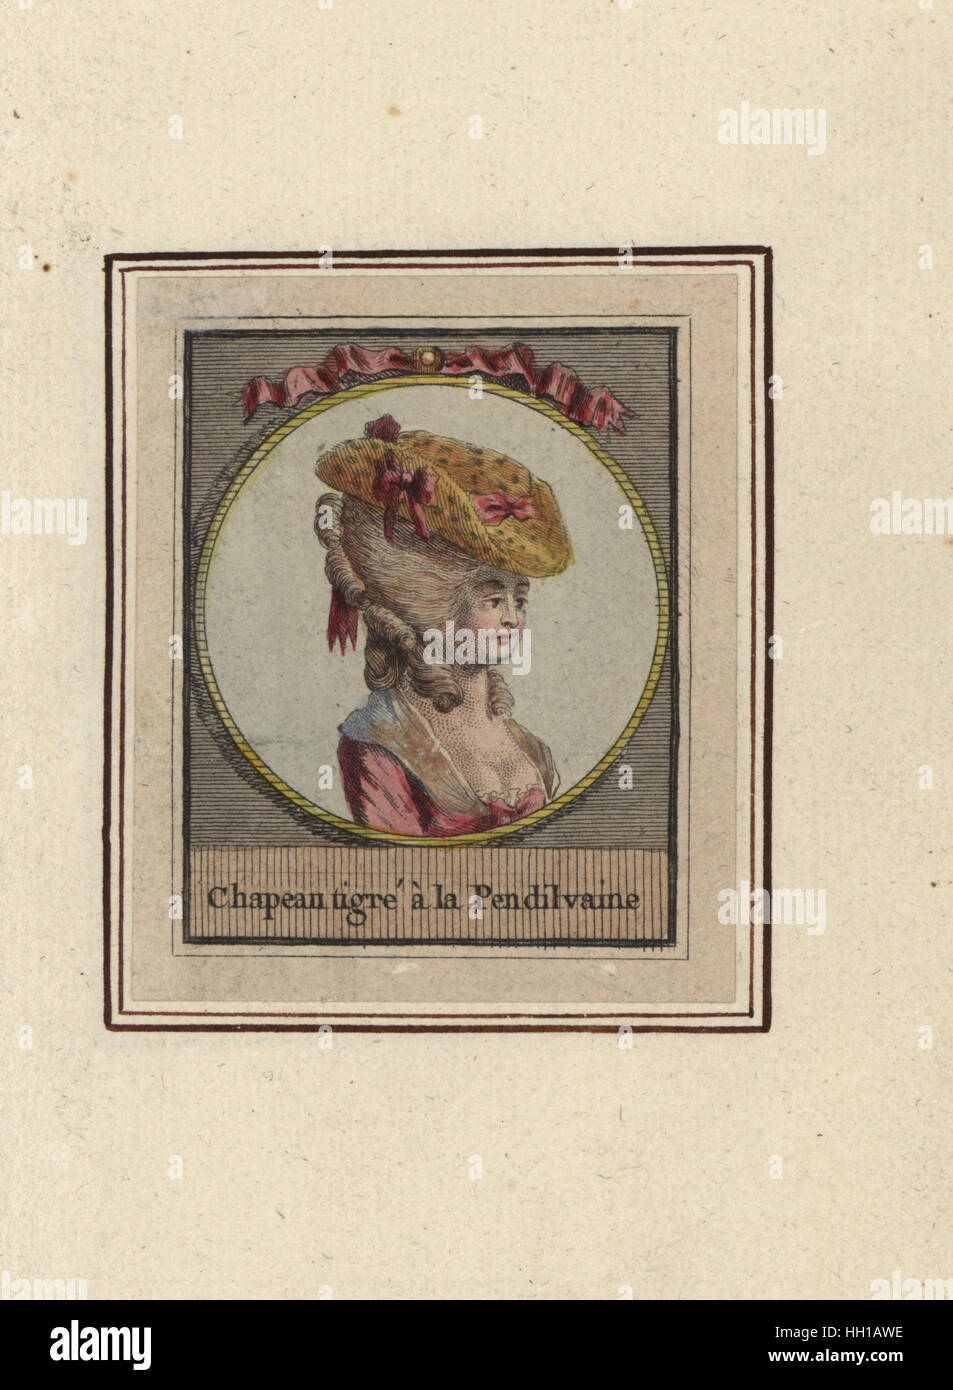 Donna in Pennsylvania maculato hat. Chapeau tigre a la Pensilvaine. Handcolored incisione su rame da un artista sconosciuto da un album di acconciature moda del 1783, Suite des Coeffures a la Mode en 1783, Esnauts et Rapilly, Parigi, 1783. Foto Stock